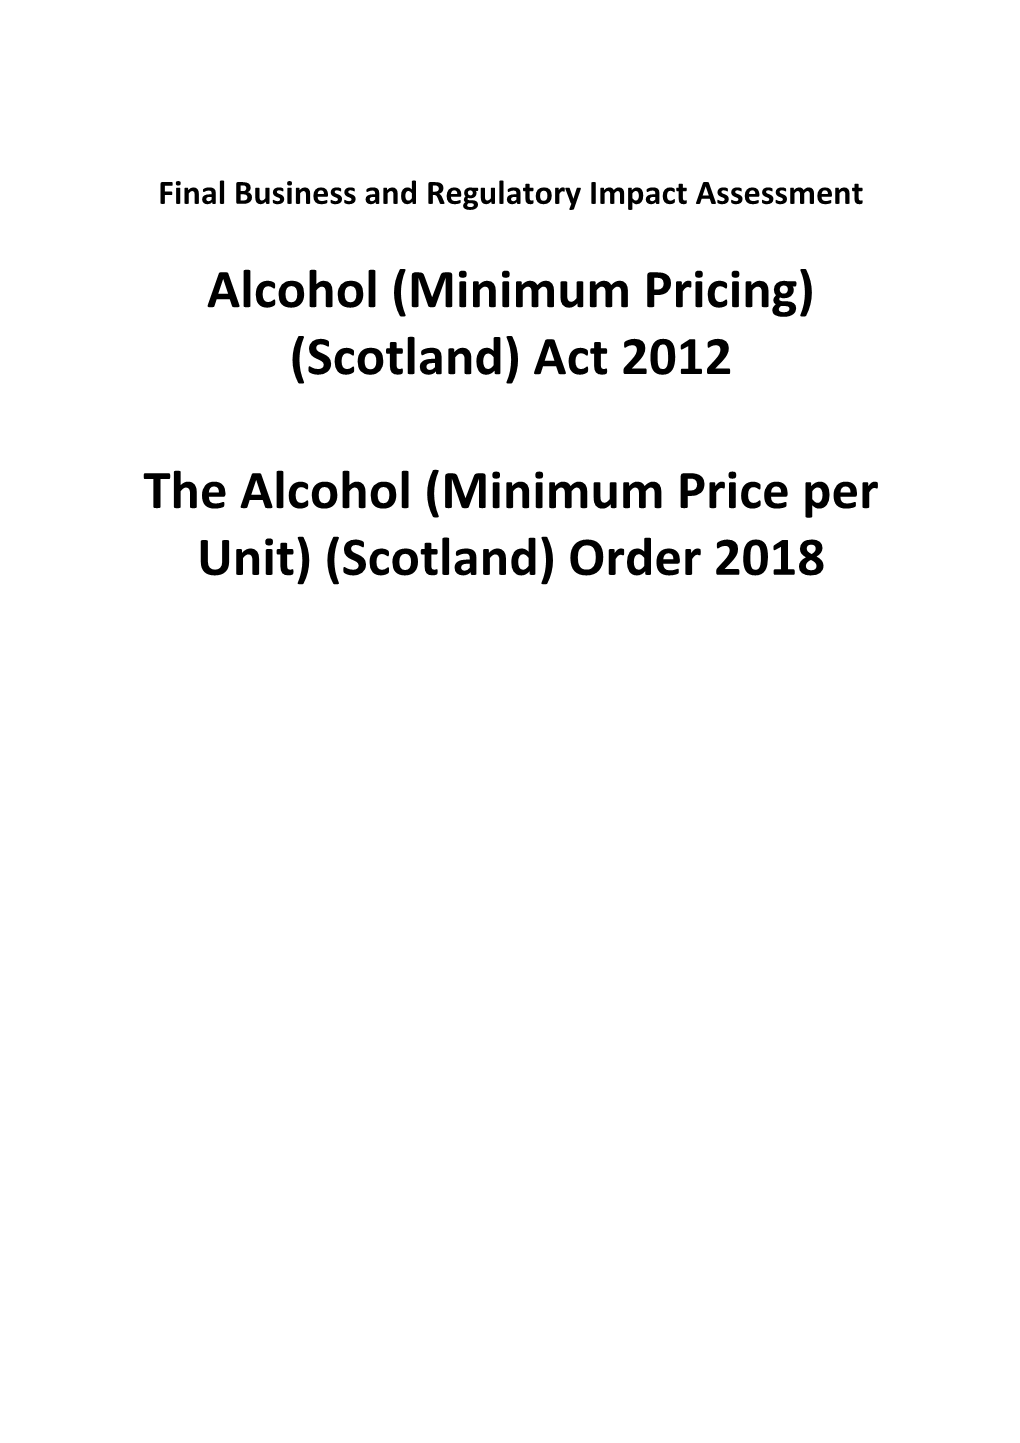 The Alcohol (Minimum Price Per Unit) (Scotland) Order 2018